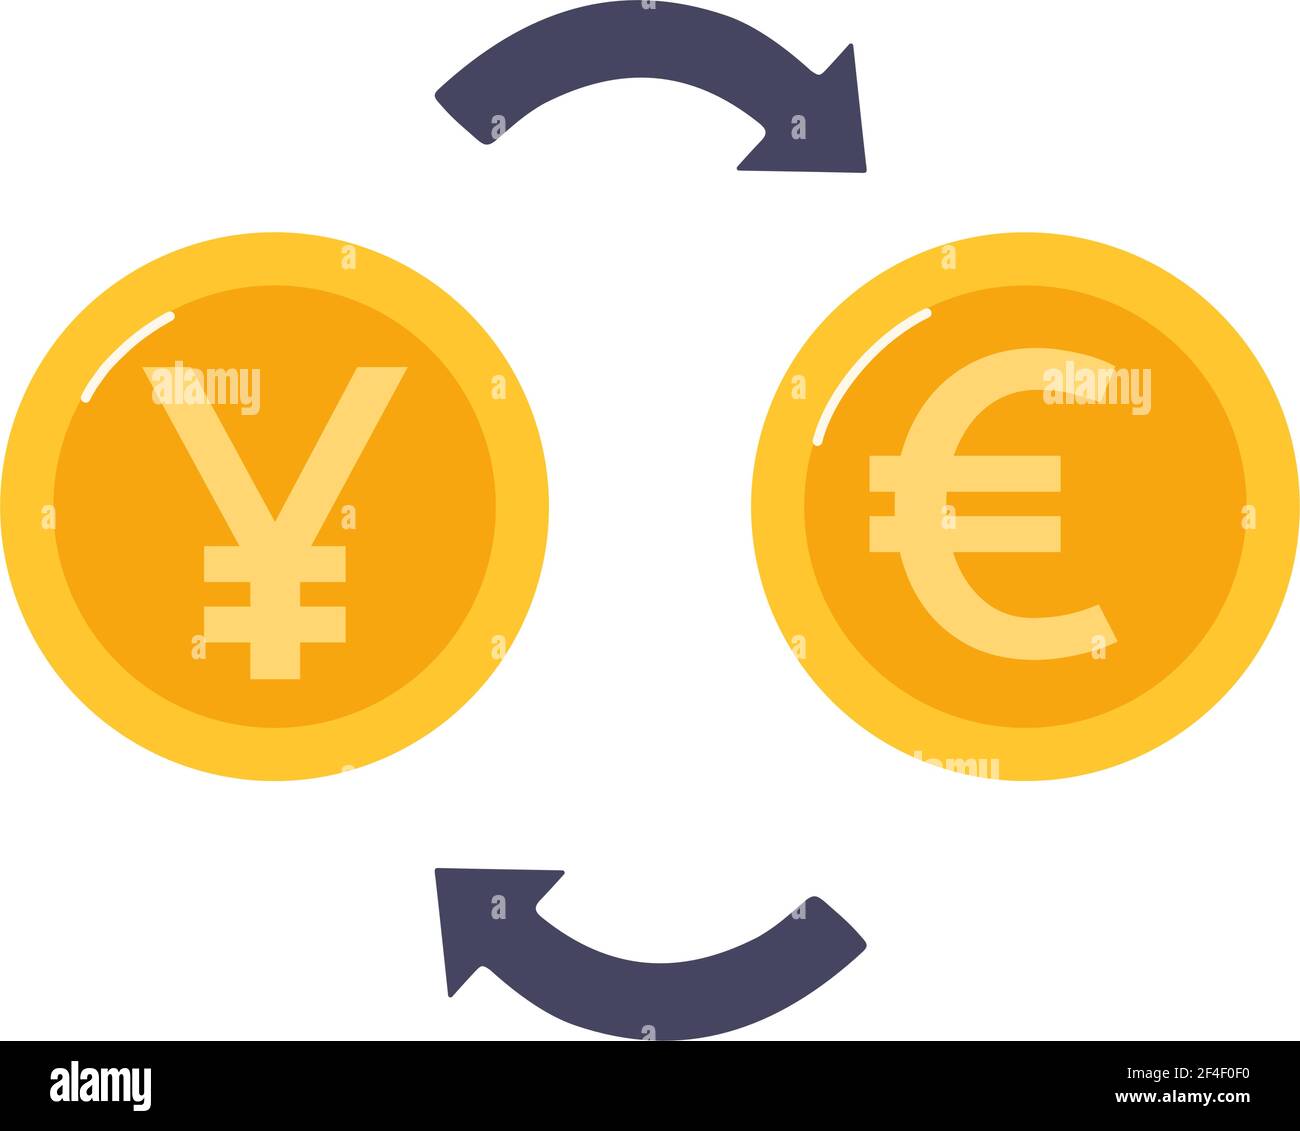 Tauschen Sie chinesischen Yuan in Euro. Goldmünzen und Pfeile zwischen ihnen..Geldwechsel. Vektorgrafik in flacher Form, isoliert Stock Vektor